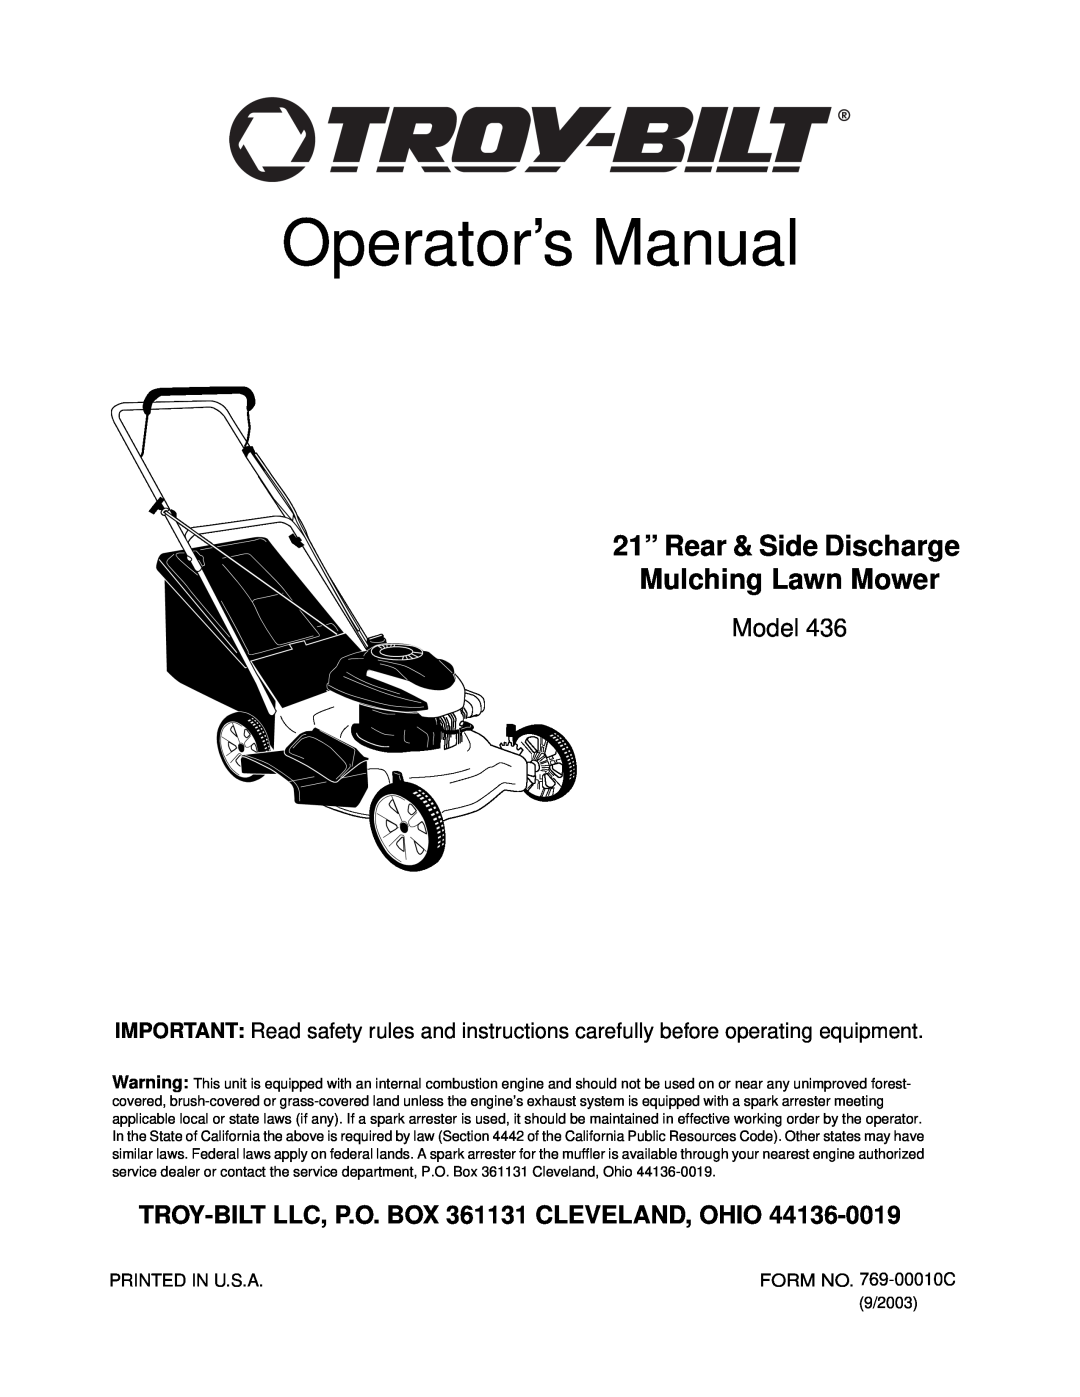 Troy-Bilt 436 manual Operator’s Manual, 21” Rear & Side Discharge Mulching Lawn Mower, Model 